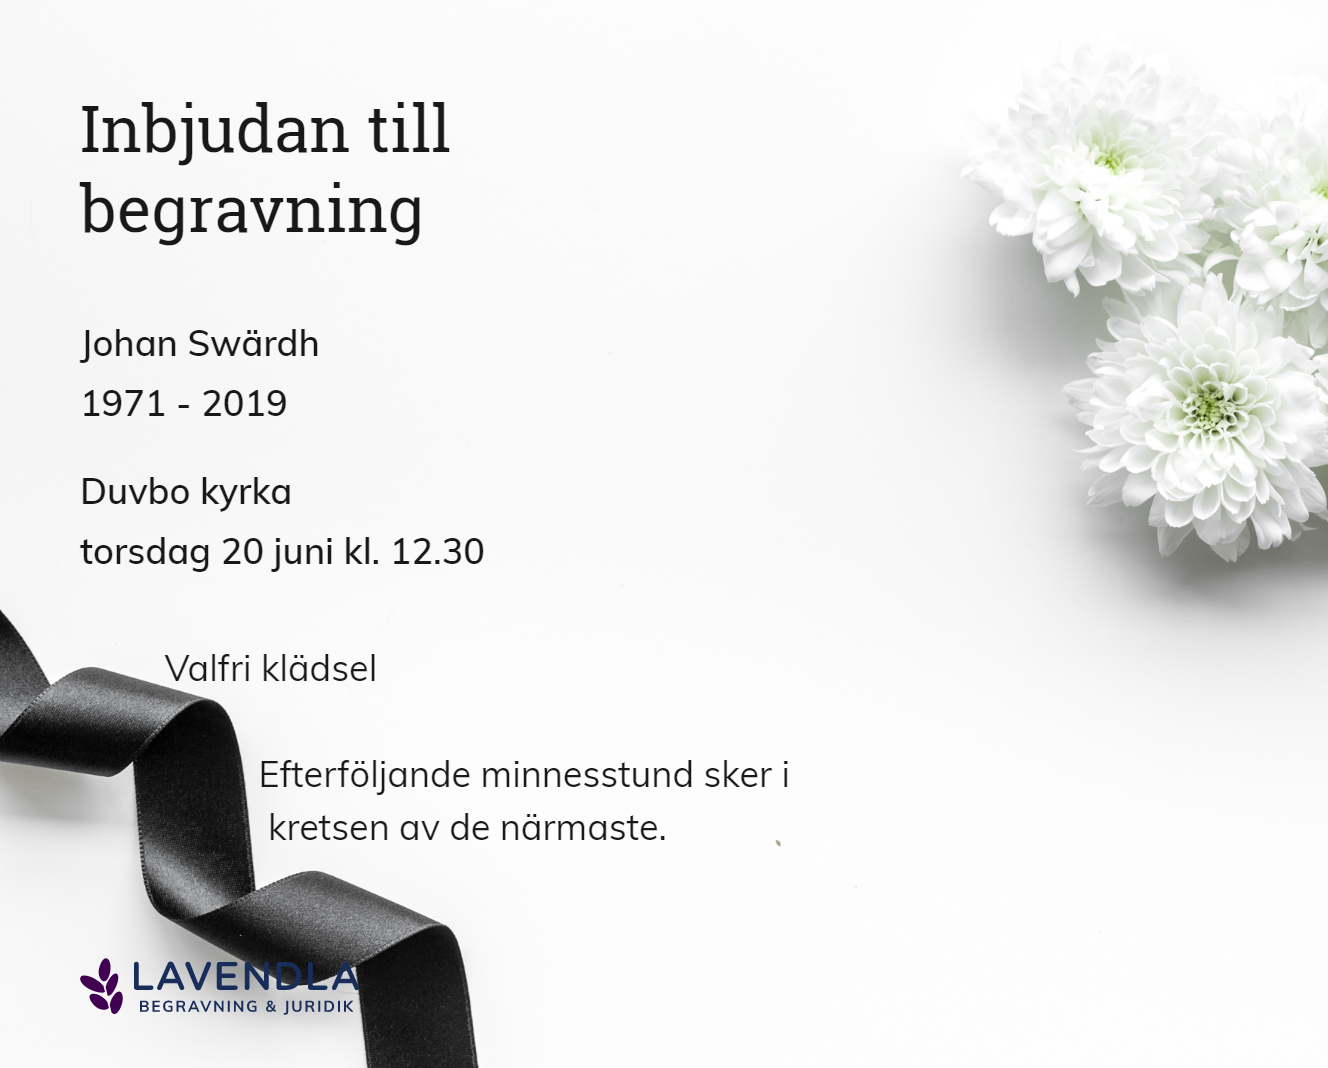 Inbjudningskort till ceremonin för Johan Swärdh